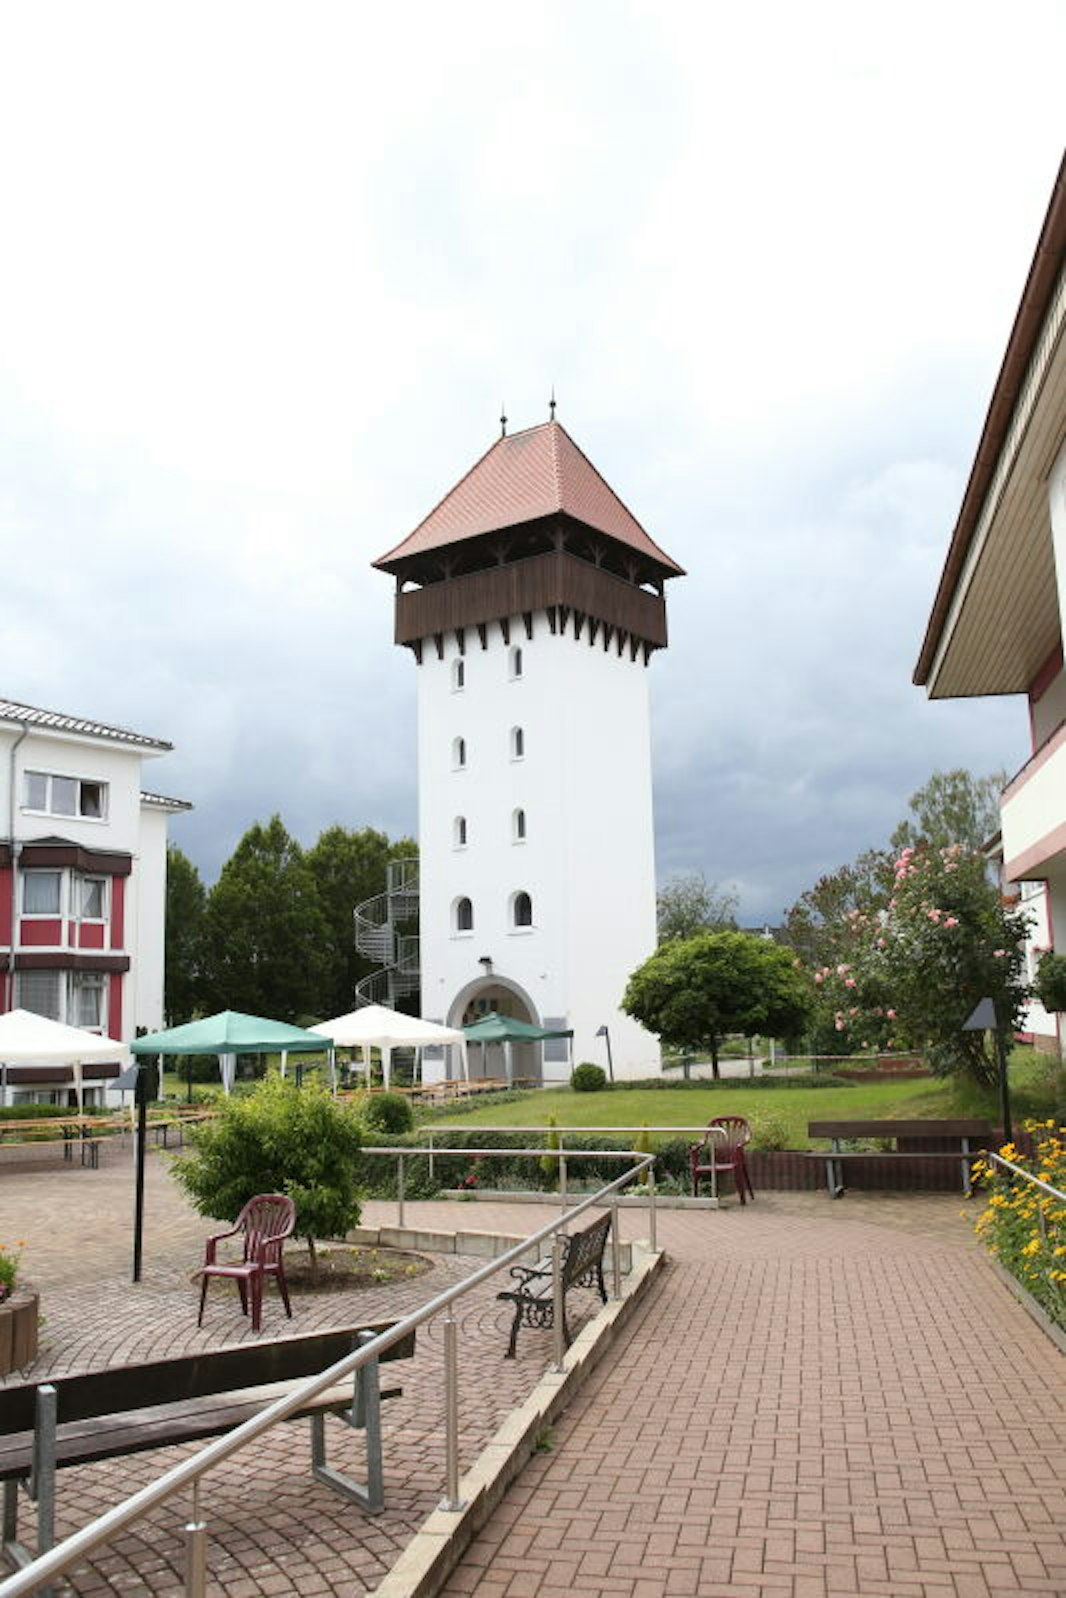 Christa und Jürgen Brandsch-Böhm haben in der Siedlung, in der auch ein Turm an die Vergangenheit ihrer Bewohner erinnert, bleibende Wurzeln geschlagen.